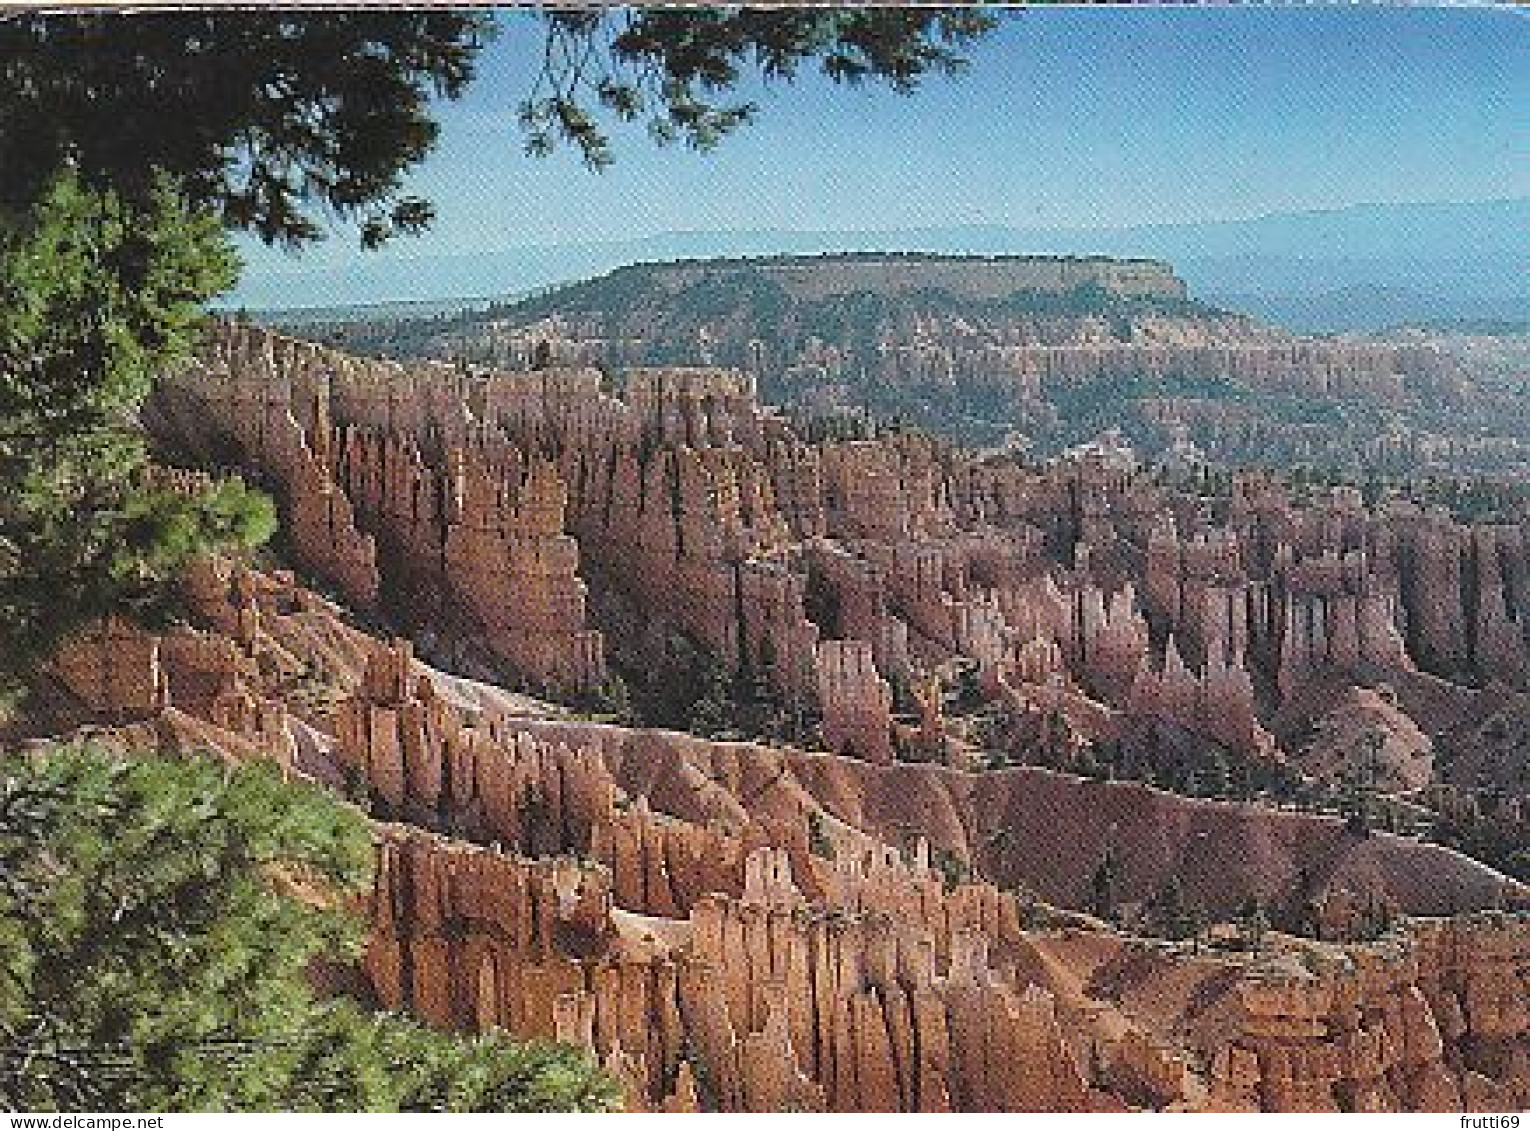 AK 165248 USA - Utah - Bryce Canyon National Park - Boat Mesa & The Queen's Garden - Bryce Canyon